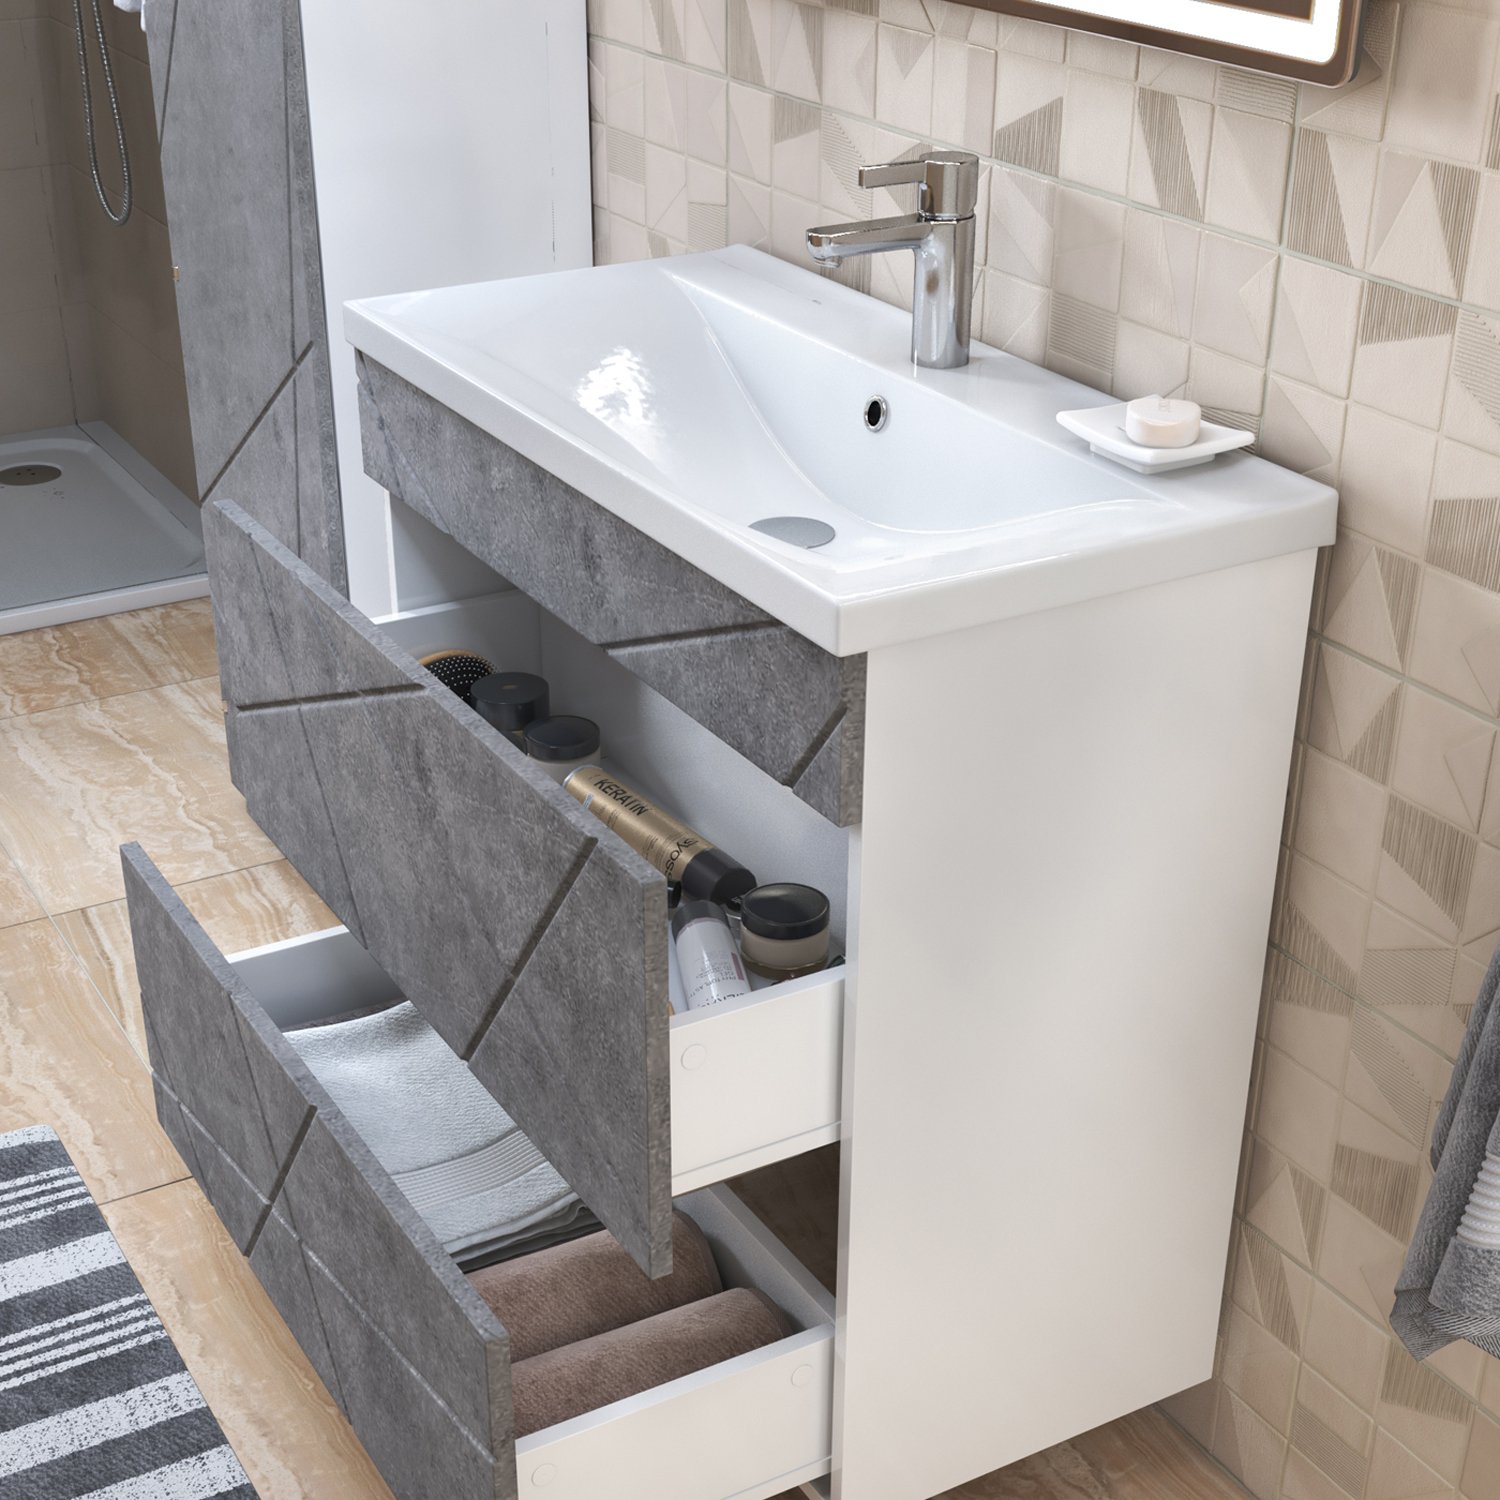 Мебель для ванной Vigo Geometry-2 80, цвет бетон